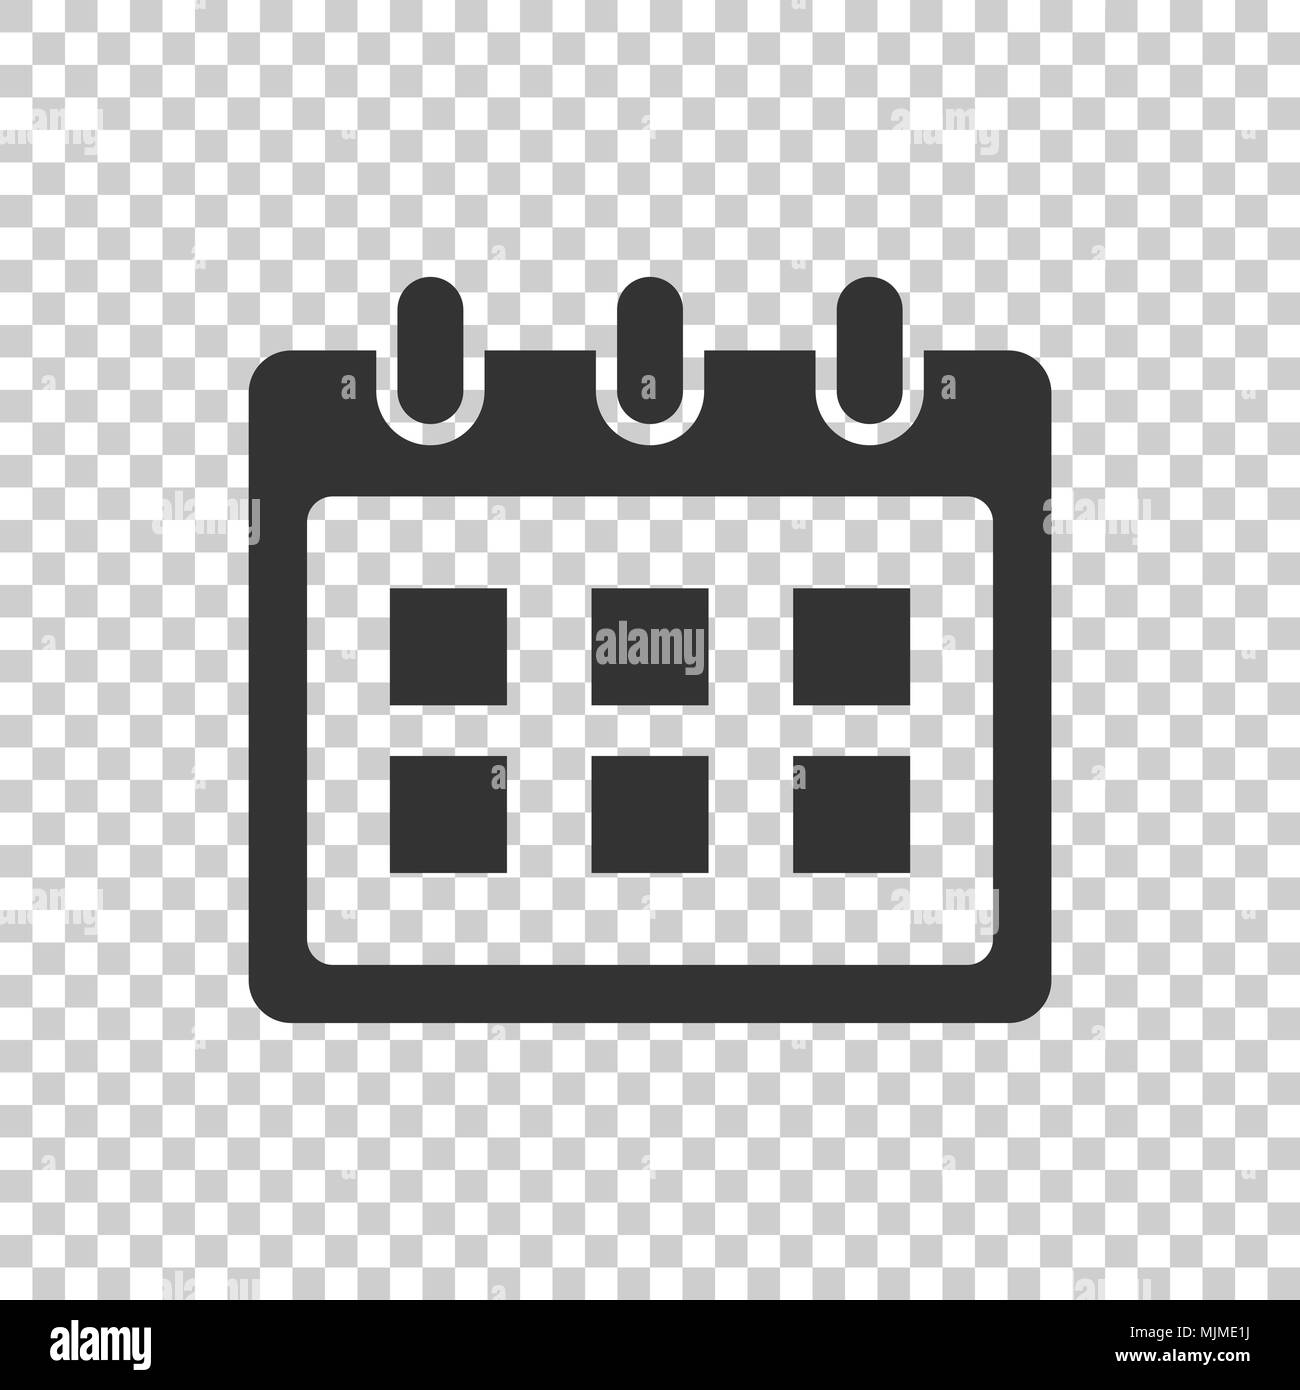 Icône de l'agenda Banque d'images noir et blanc - Alamy